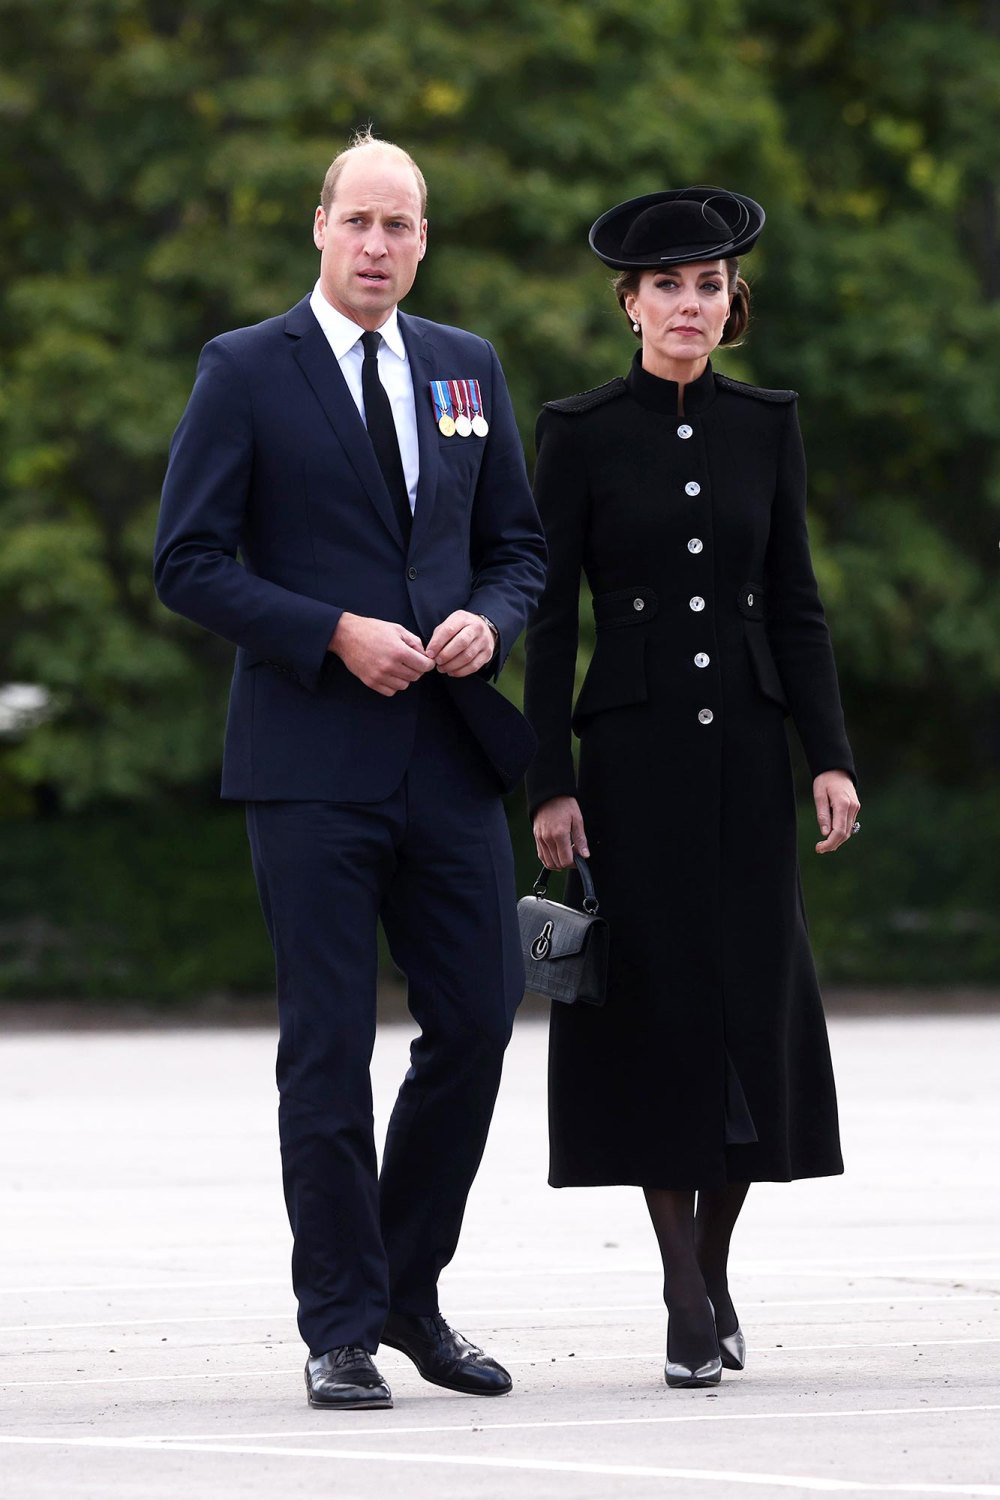 Berichten zufolge hat Sarah Rose Hanbury Gerüchte über eine Prinz-William-Affäre inmitten der Kate-Middleton-Kontroverse dementiert